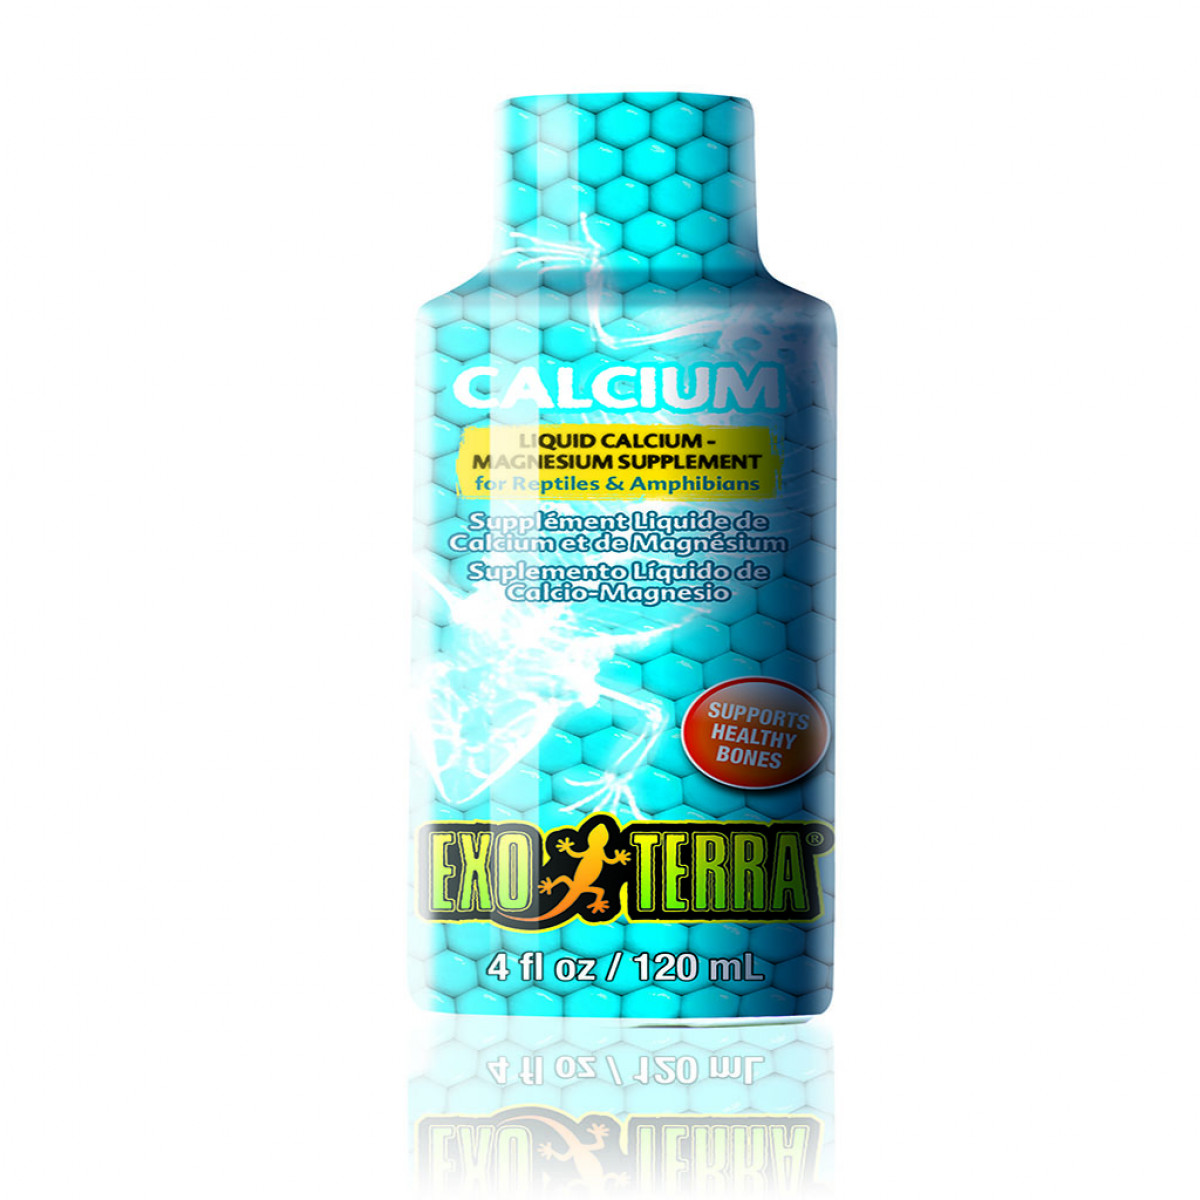 Exo Terra Calcium Liquid Supplement, 120ml 